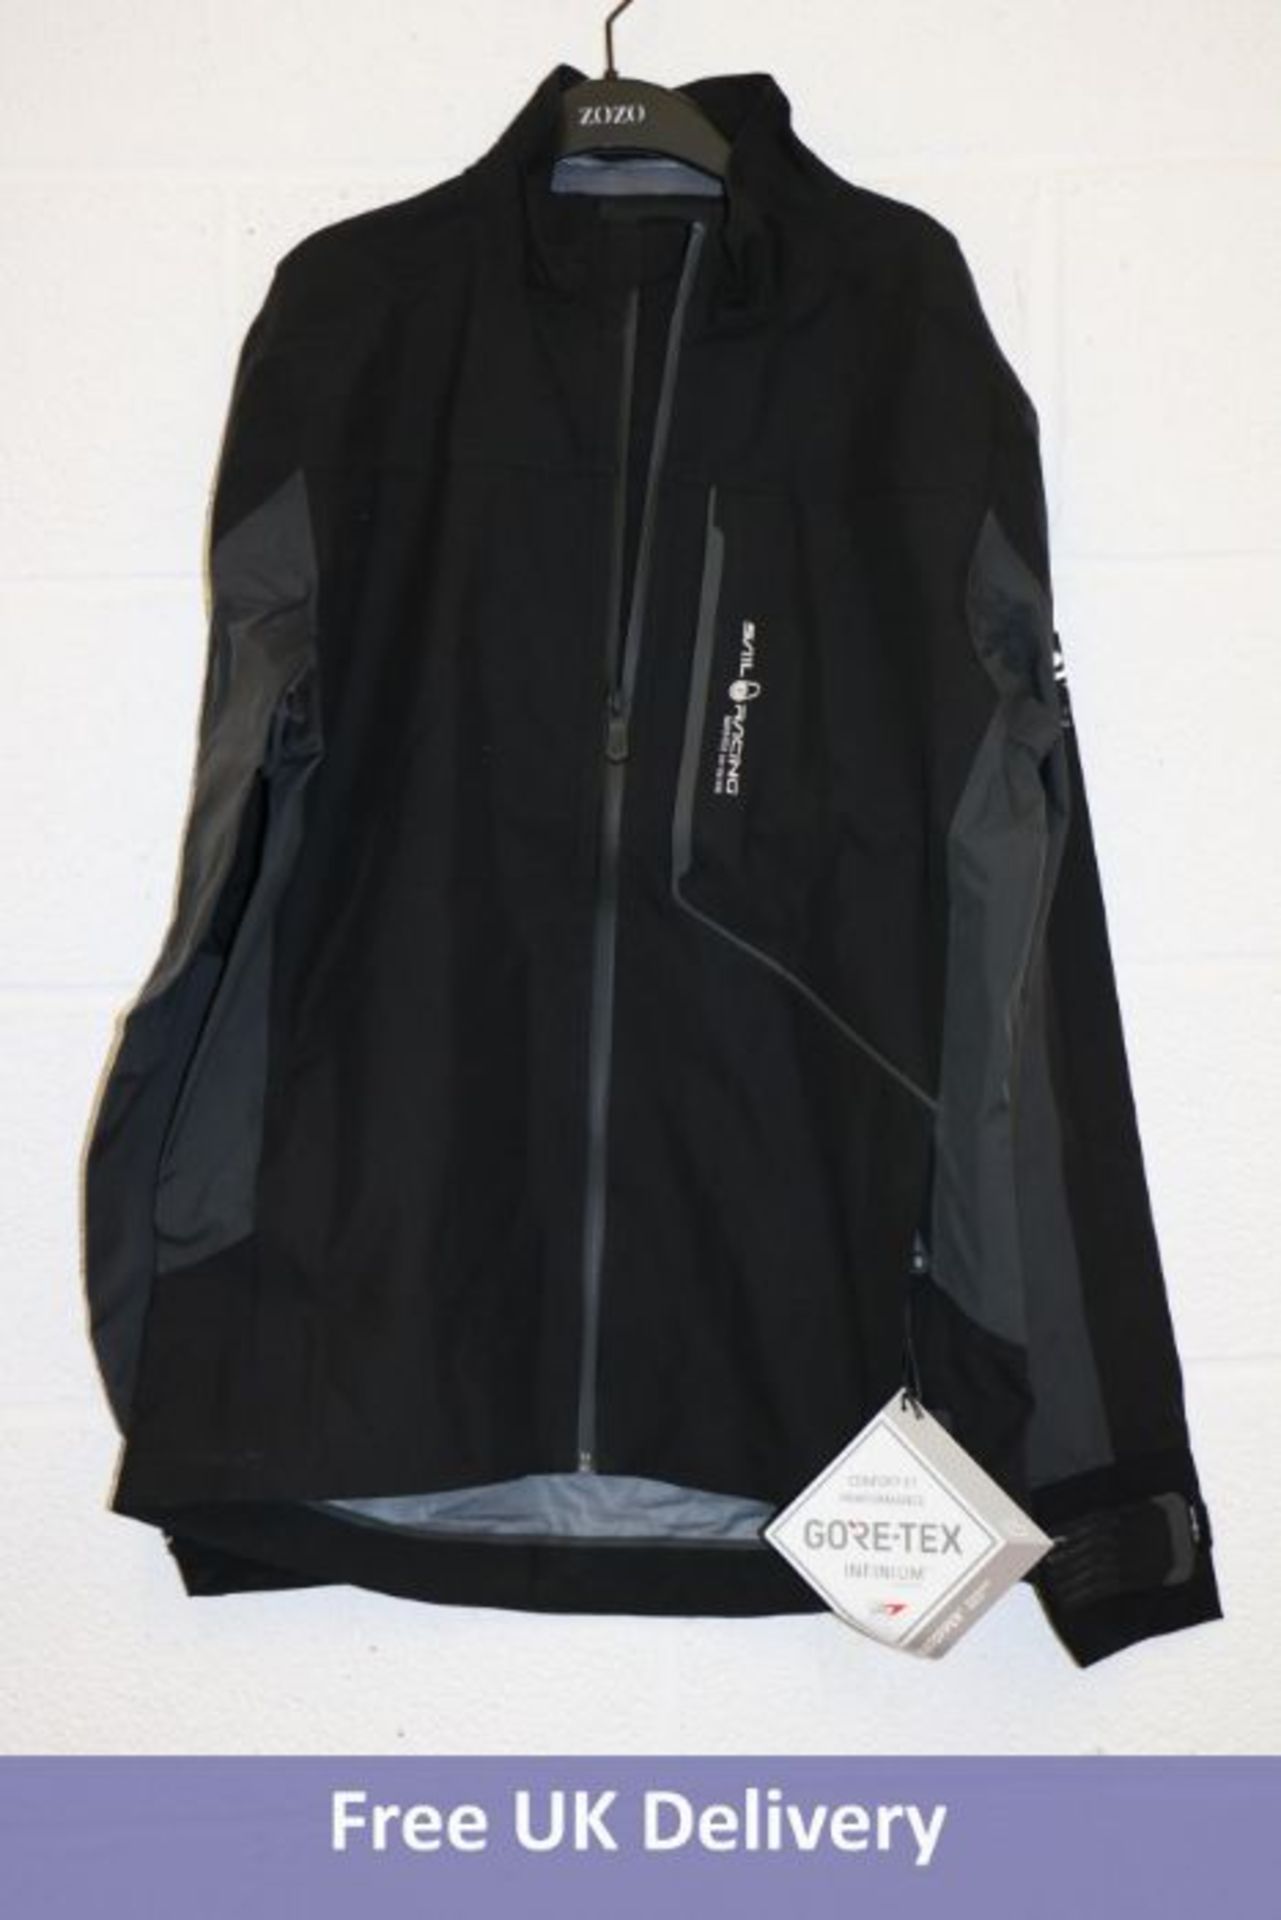 Sail Racing Reference Light Jacket, Carbon, Medium